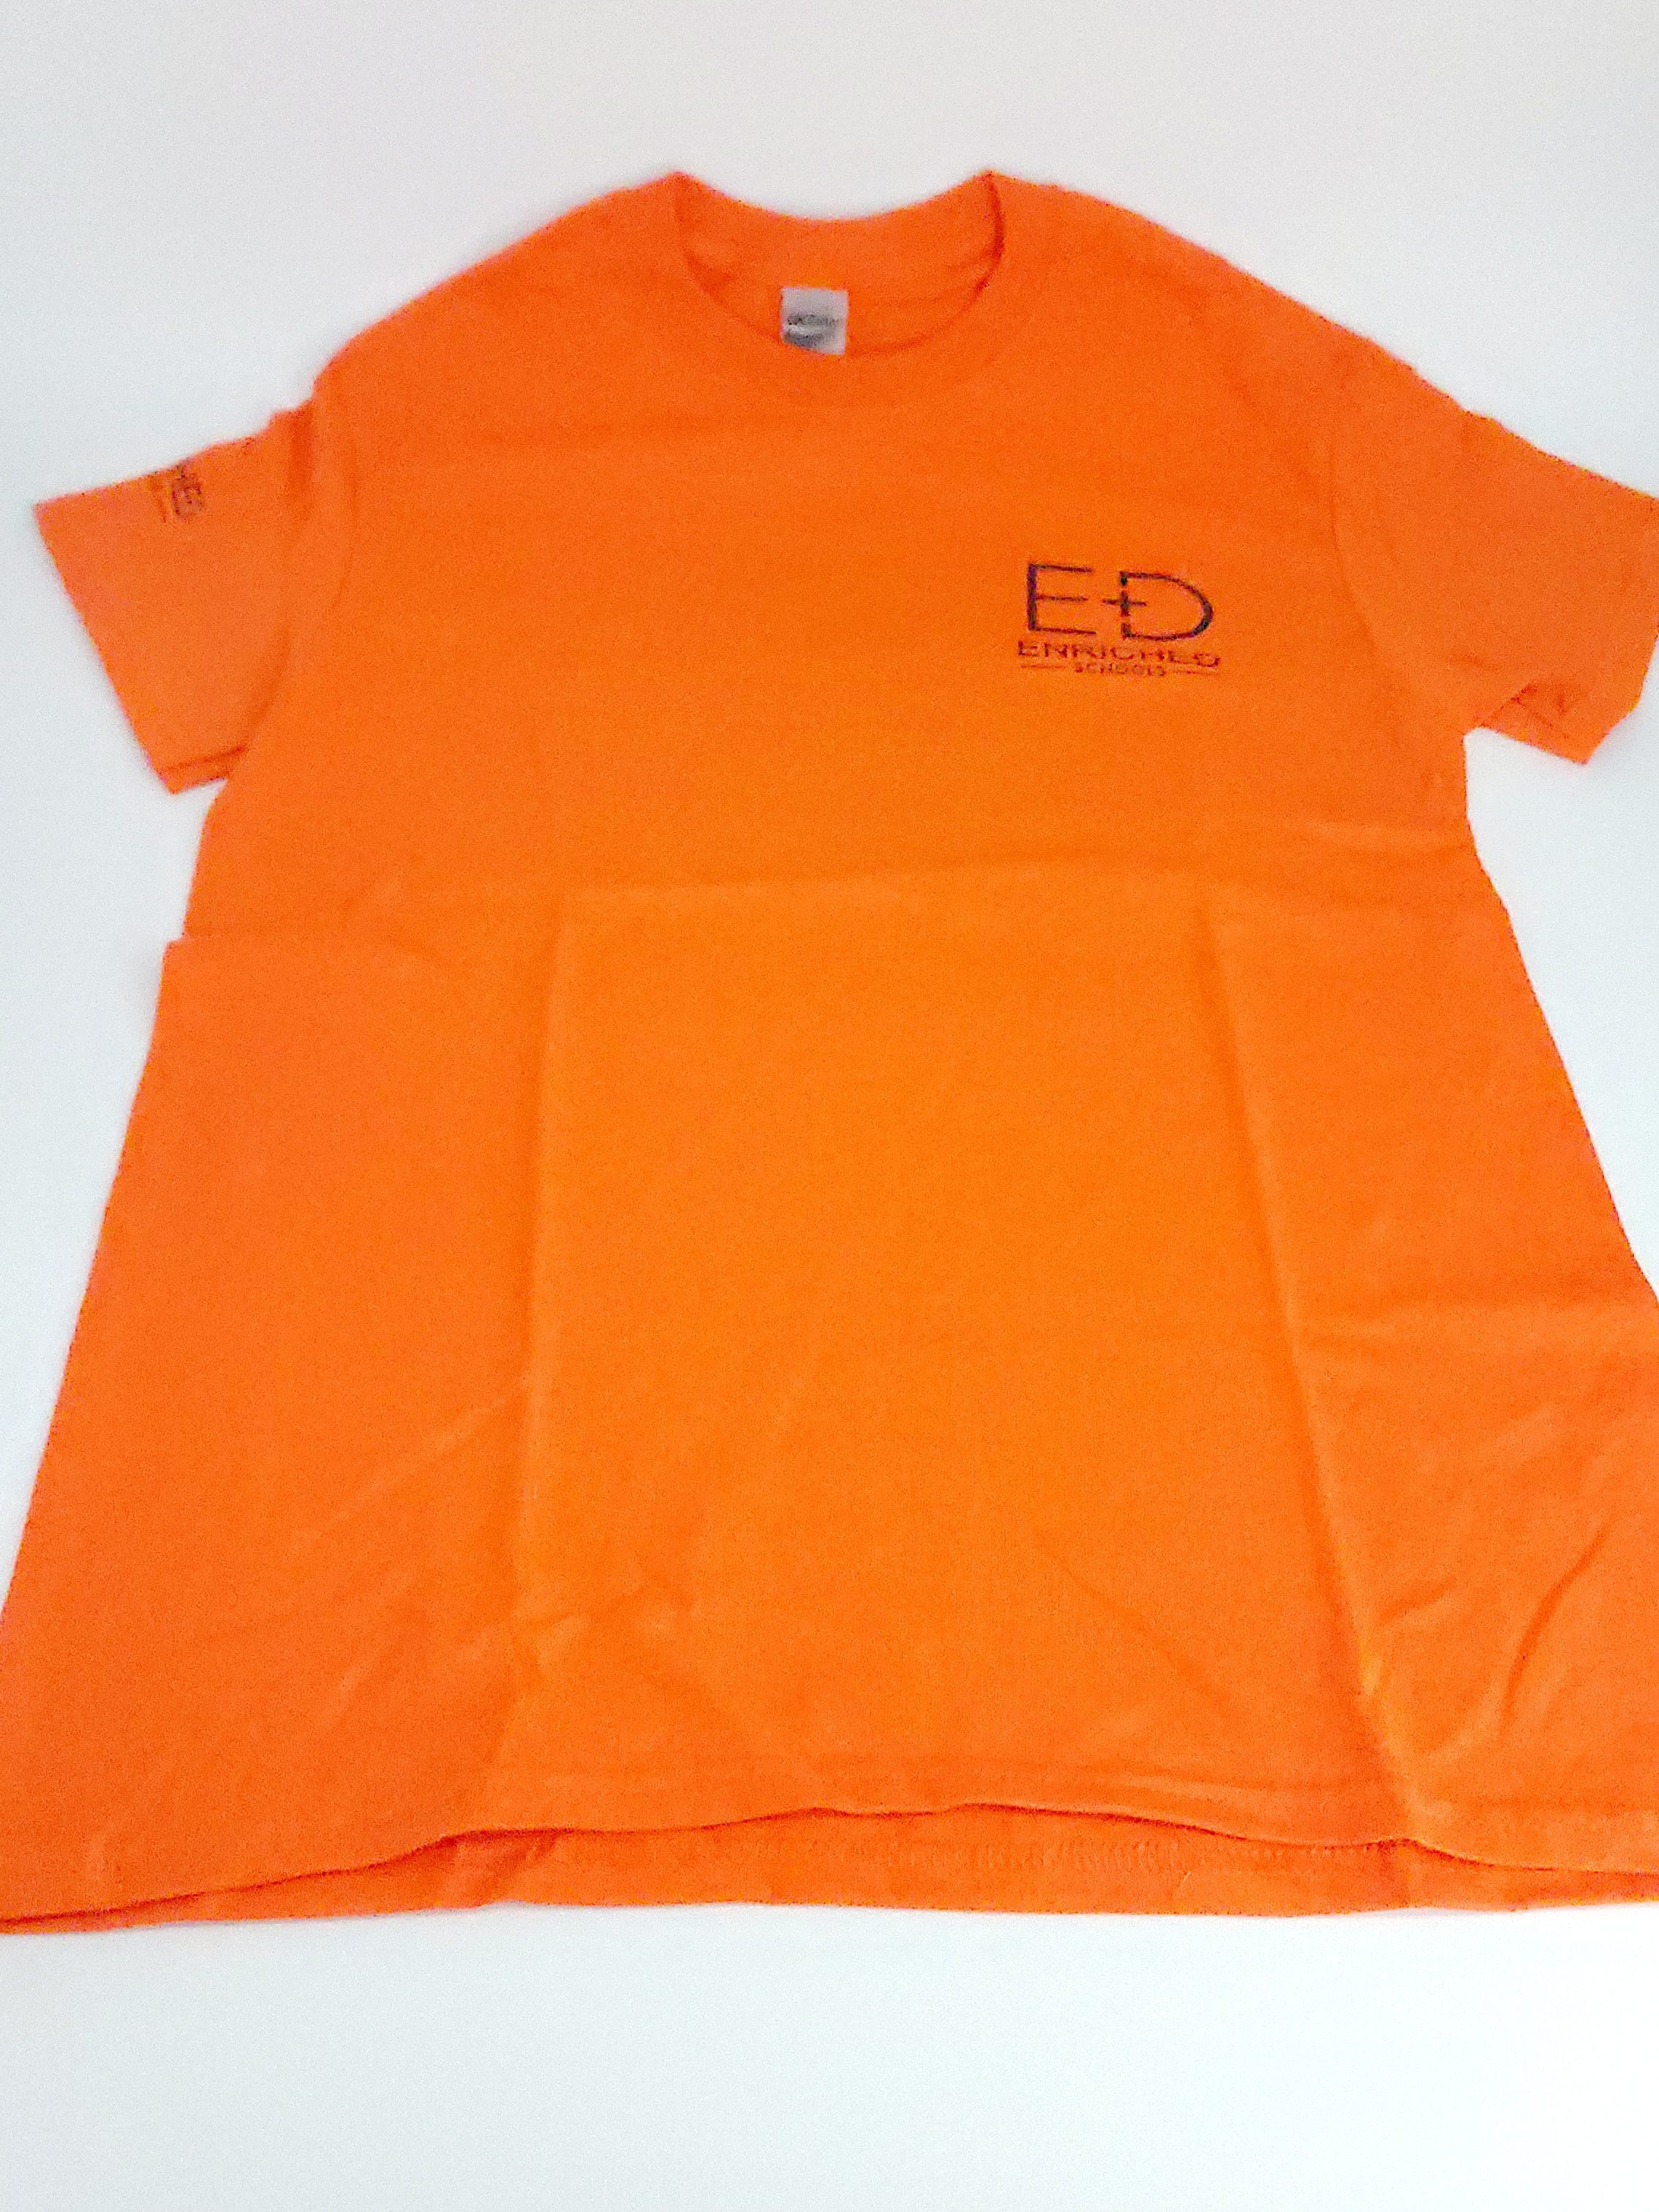 ED Orange T-shirt